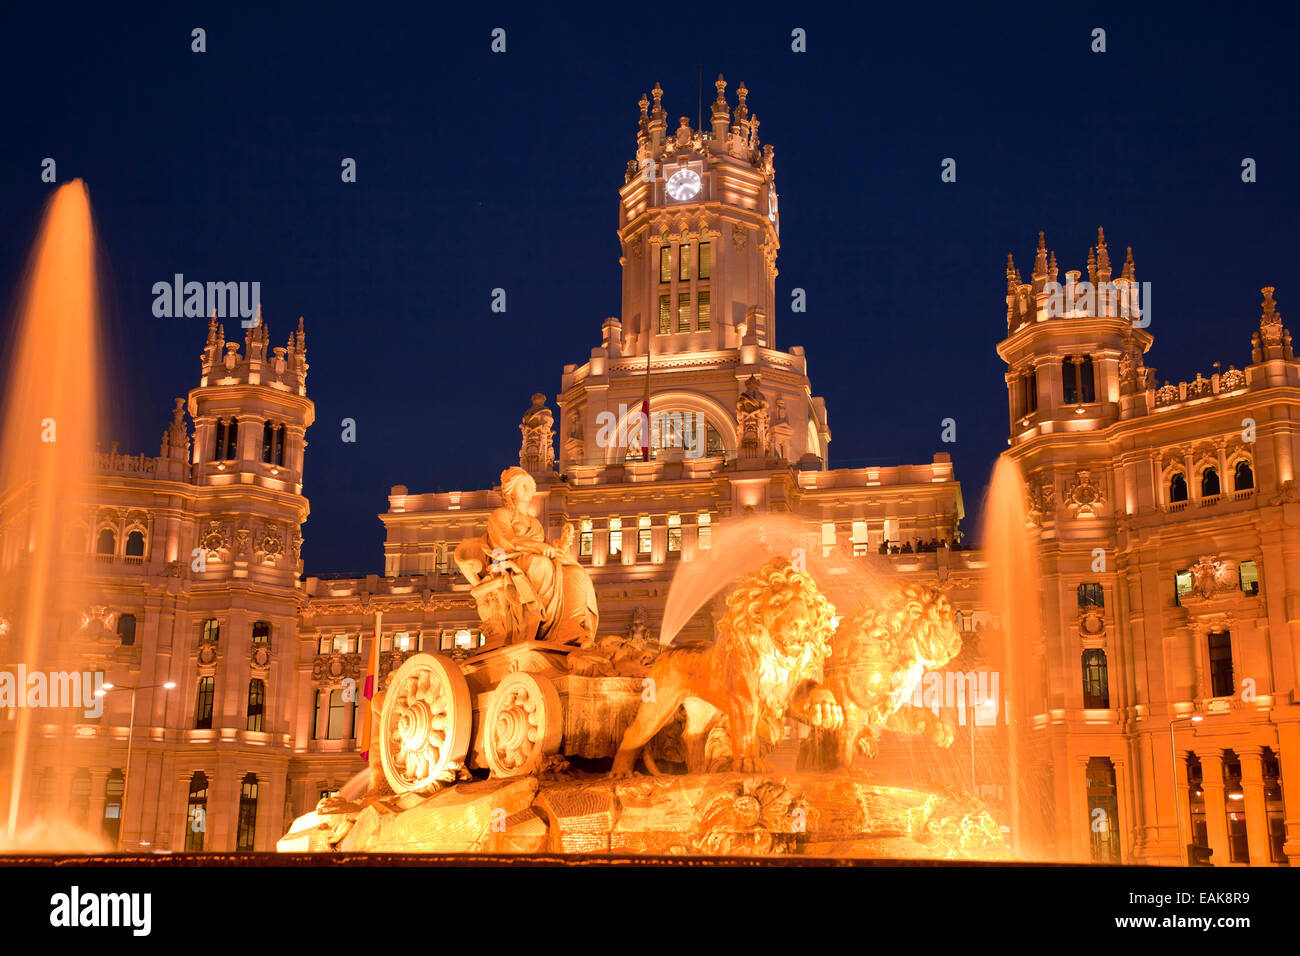 Illuminated Fuente de Cibeles fountain in front of the Palacio de Comunicaciones, the former Post Office, Madrid, Spain Stock Photo